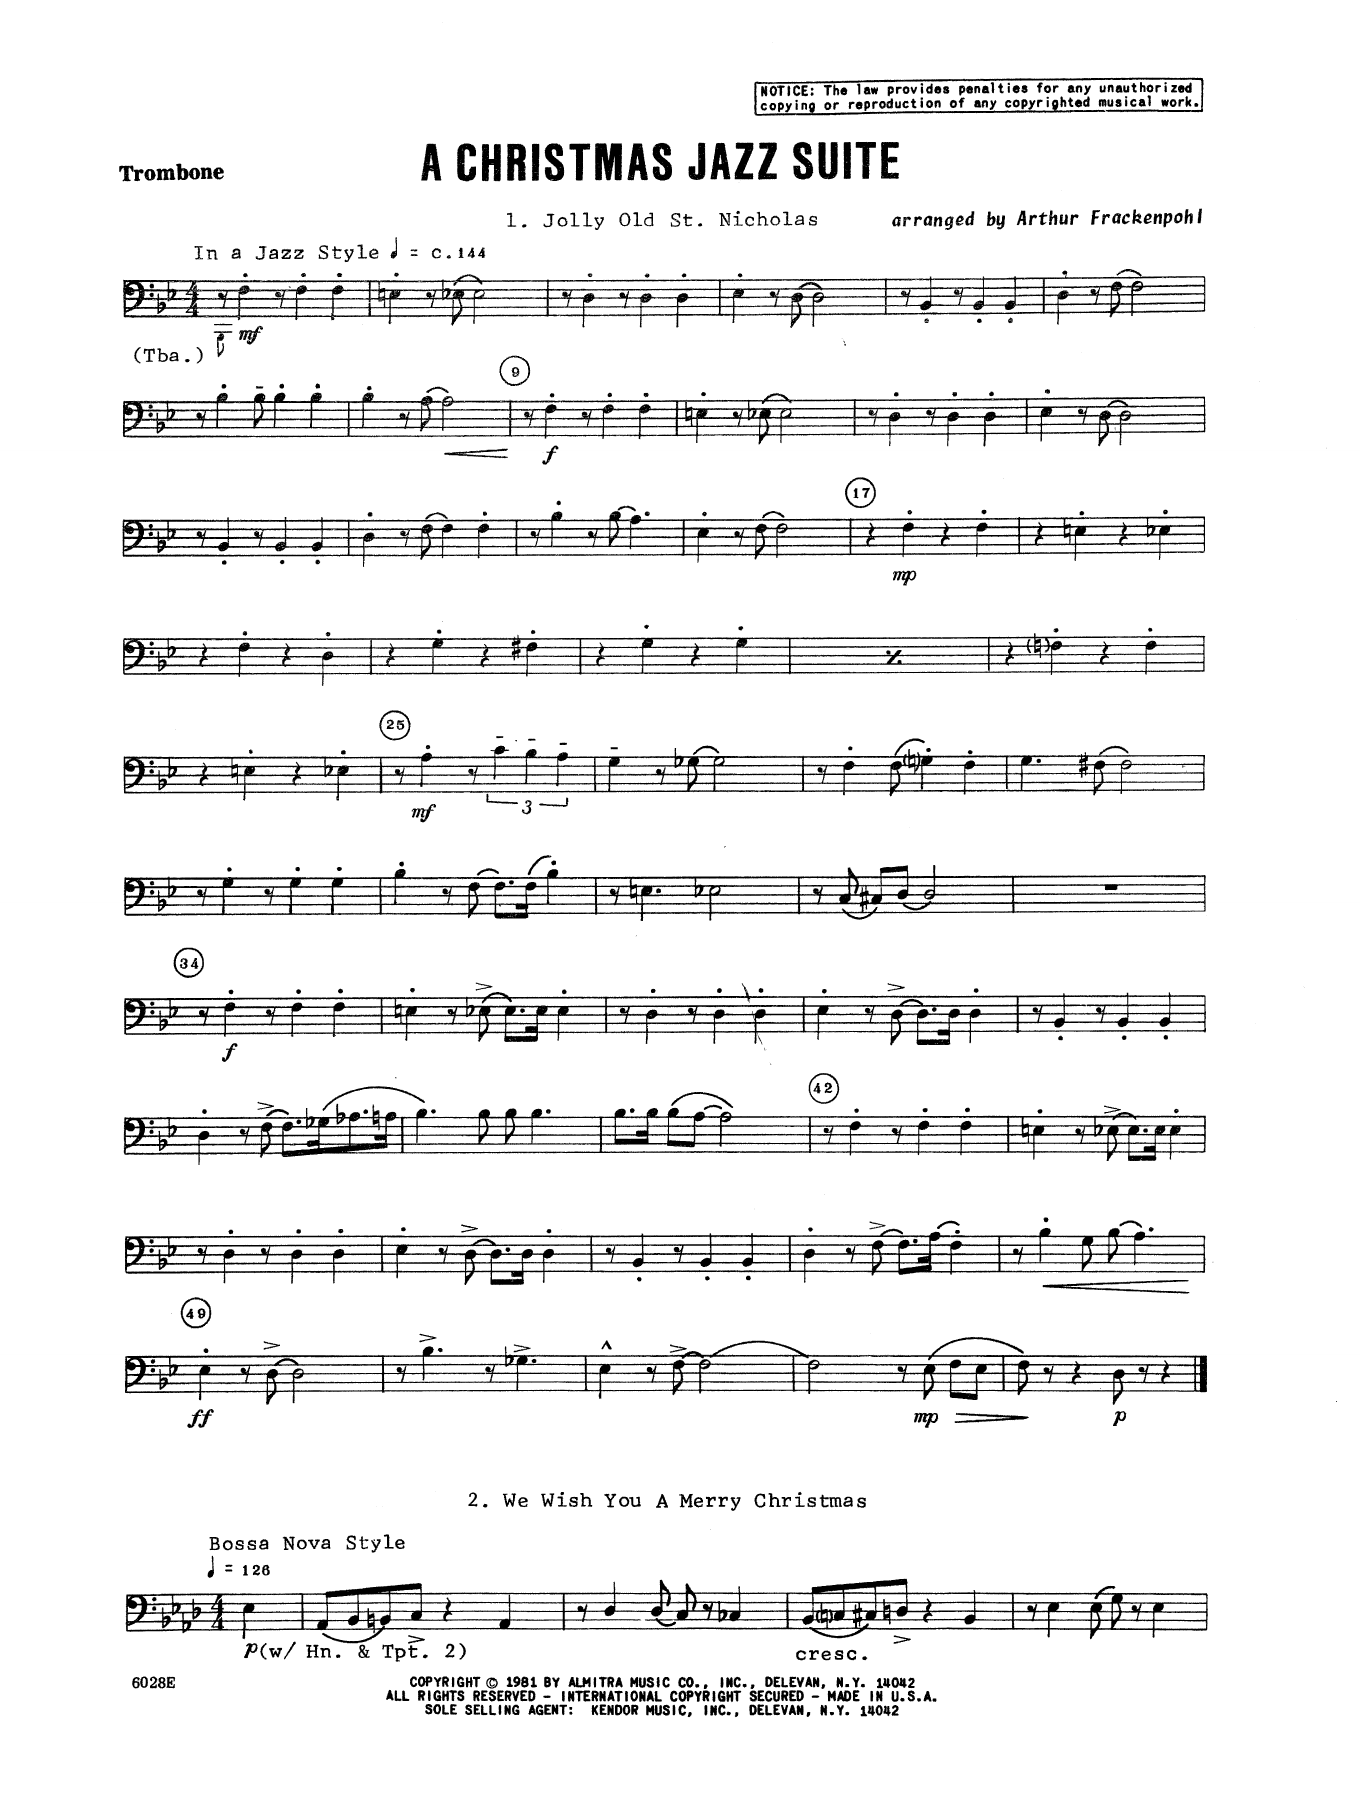 Download Arthur Frackenpohl Christmas Jazz Suite - Trombone Sheet Music